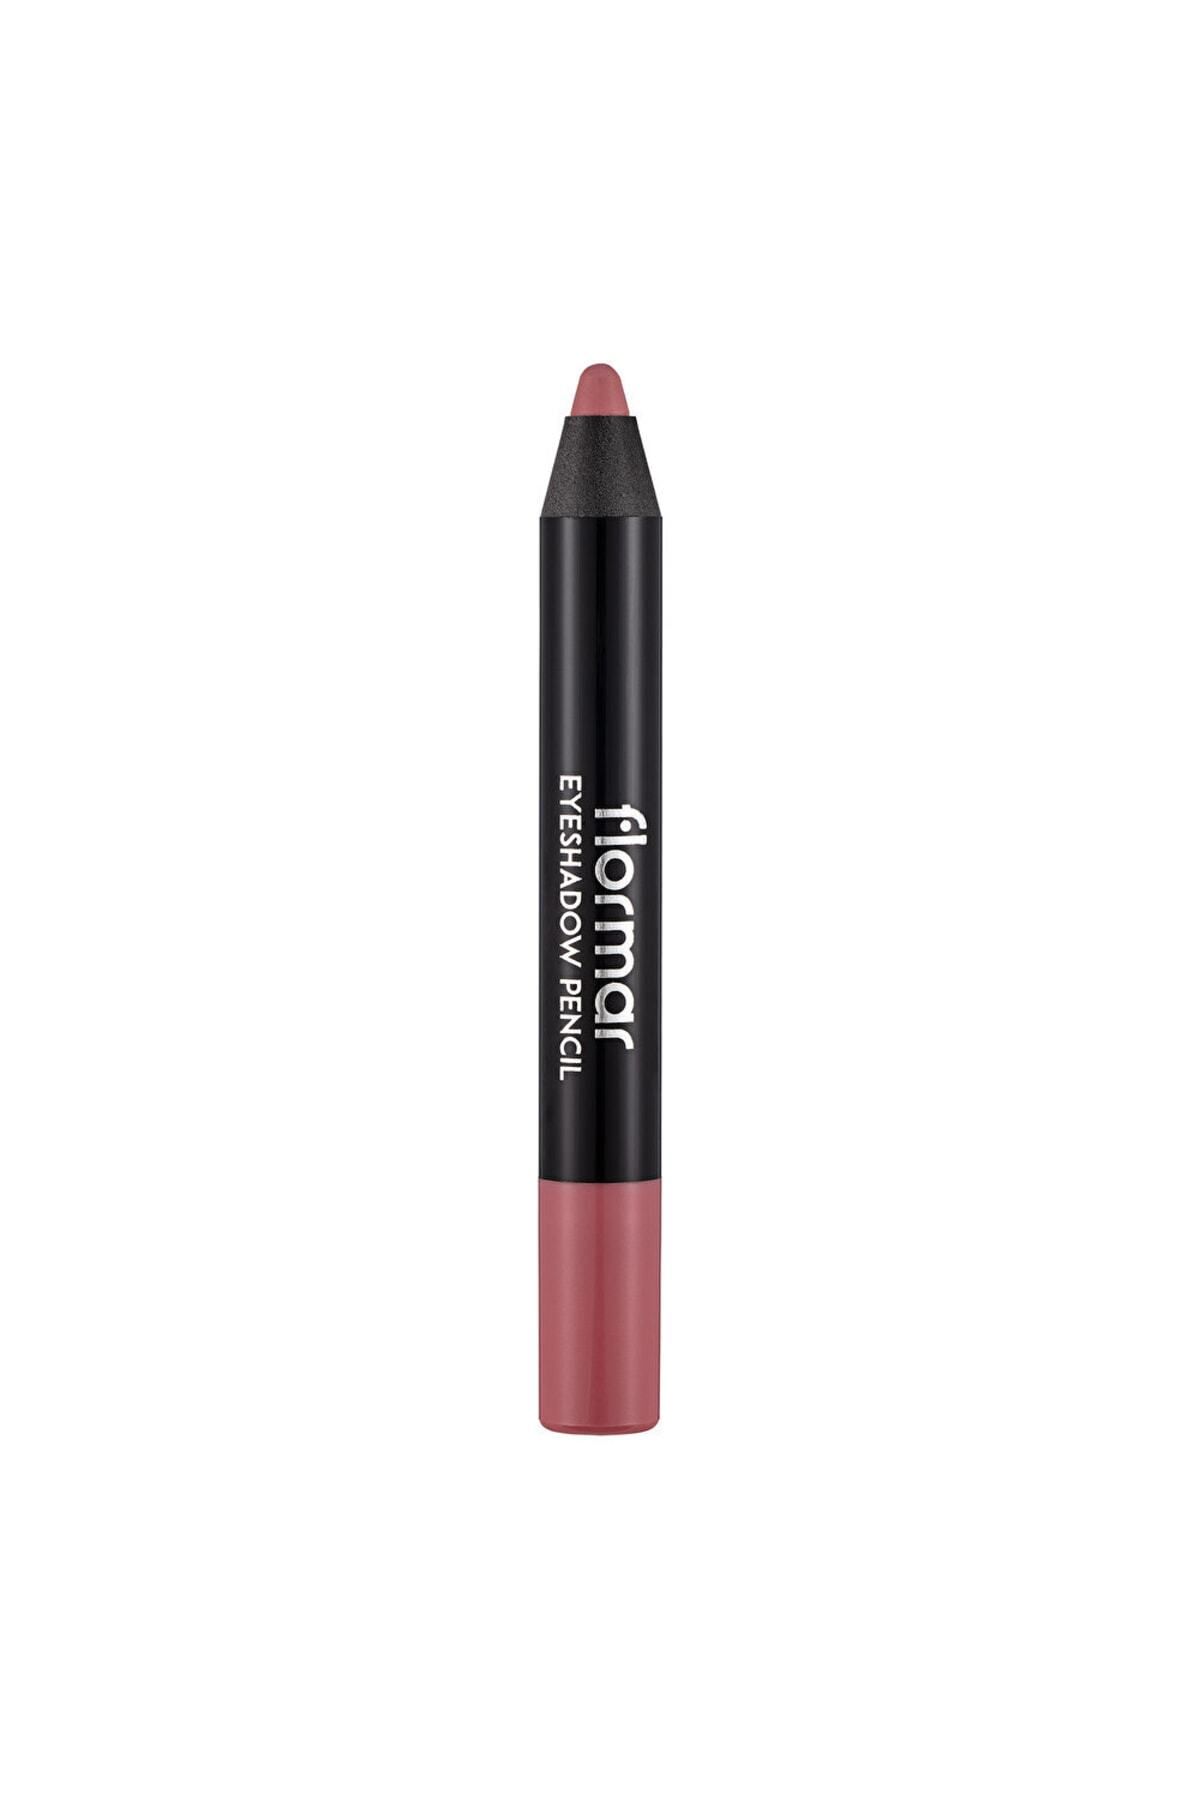 Flormar Waterproof Matte Pencil Eyeshadow - Eyeshadow Pencil - 002 Rose Pink -